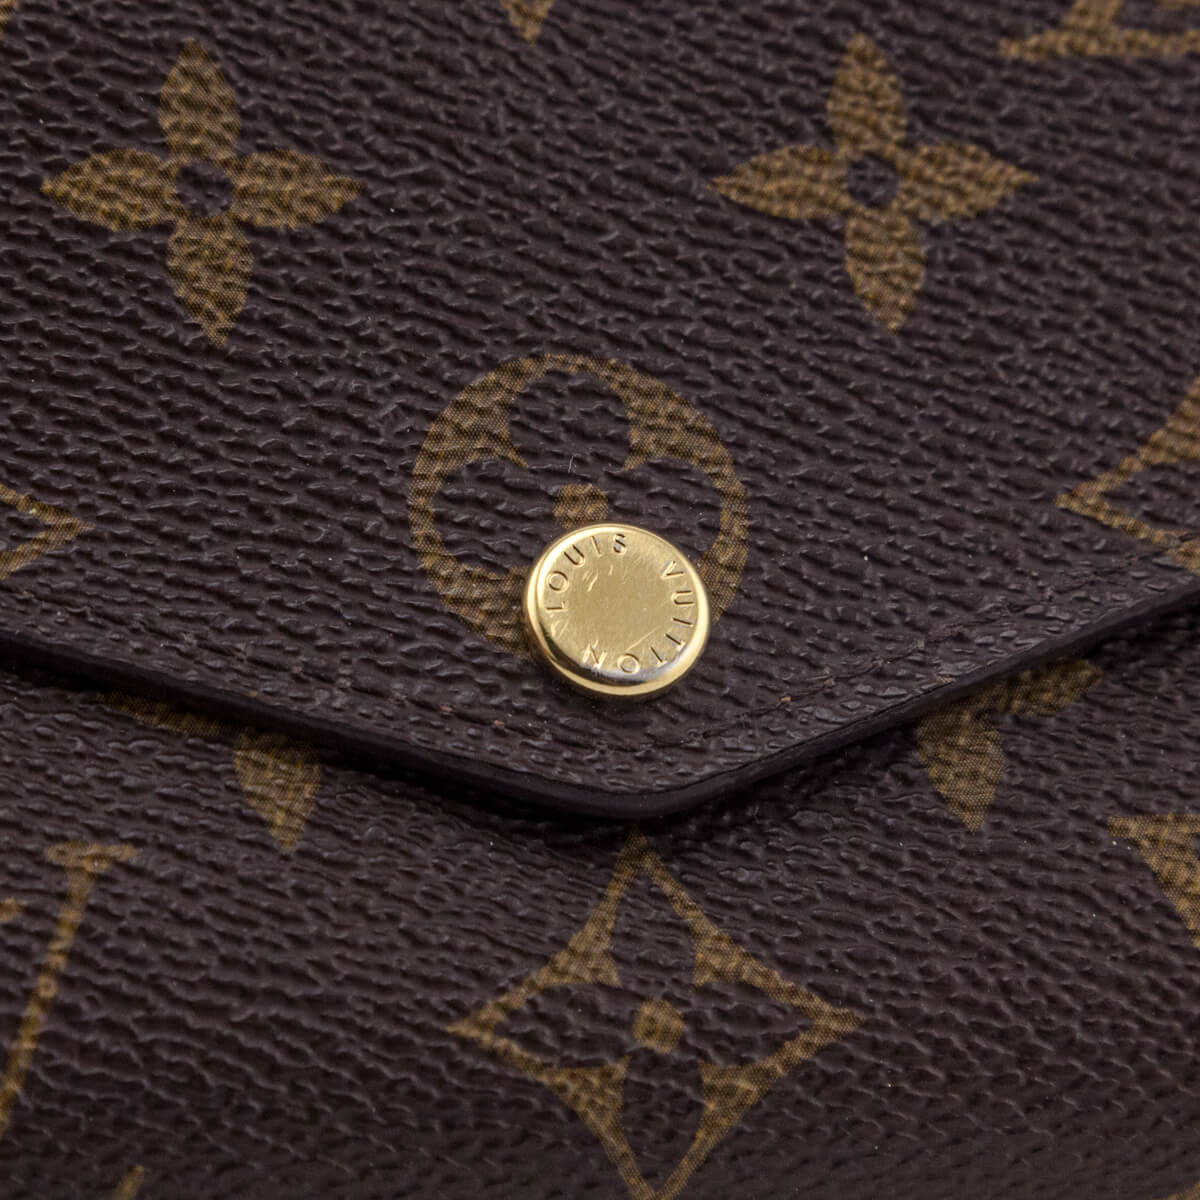 Shop Louis Vuitton MONOGRAM Sarah wallet (M60531) by iRodori03